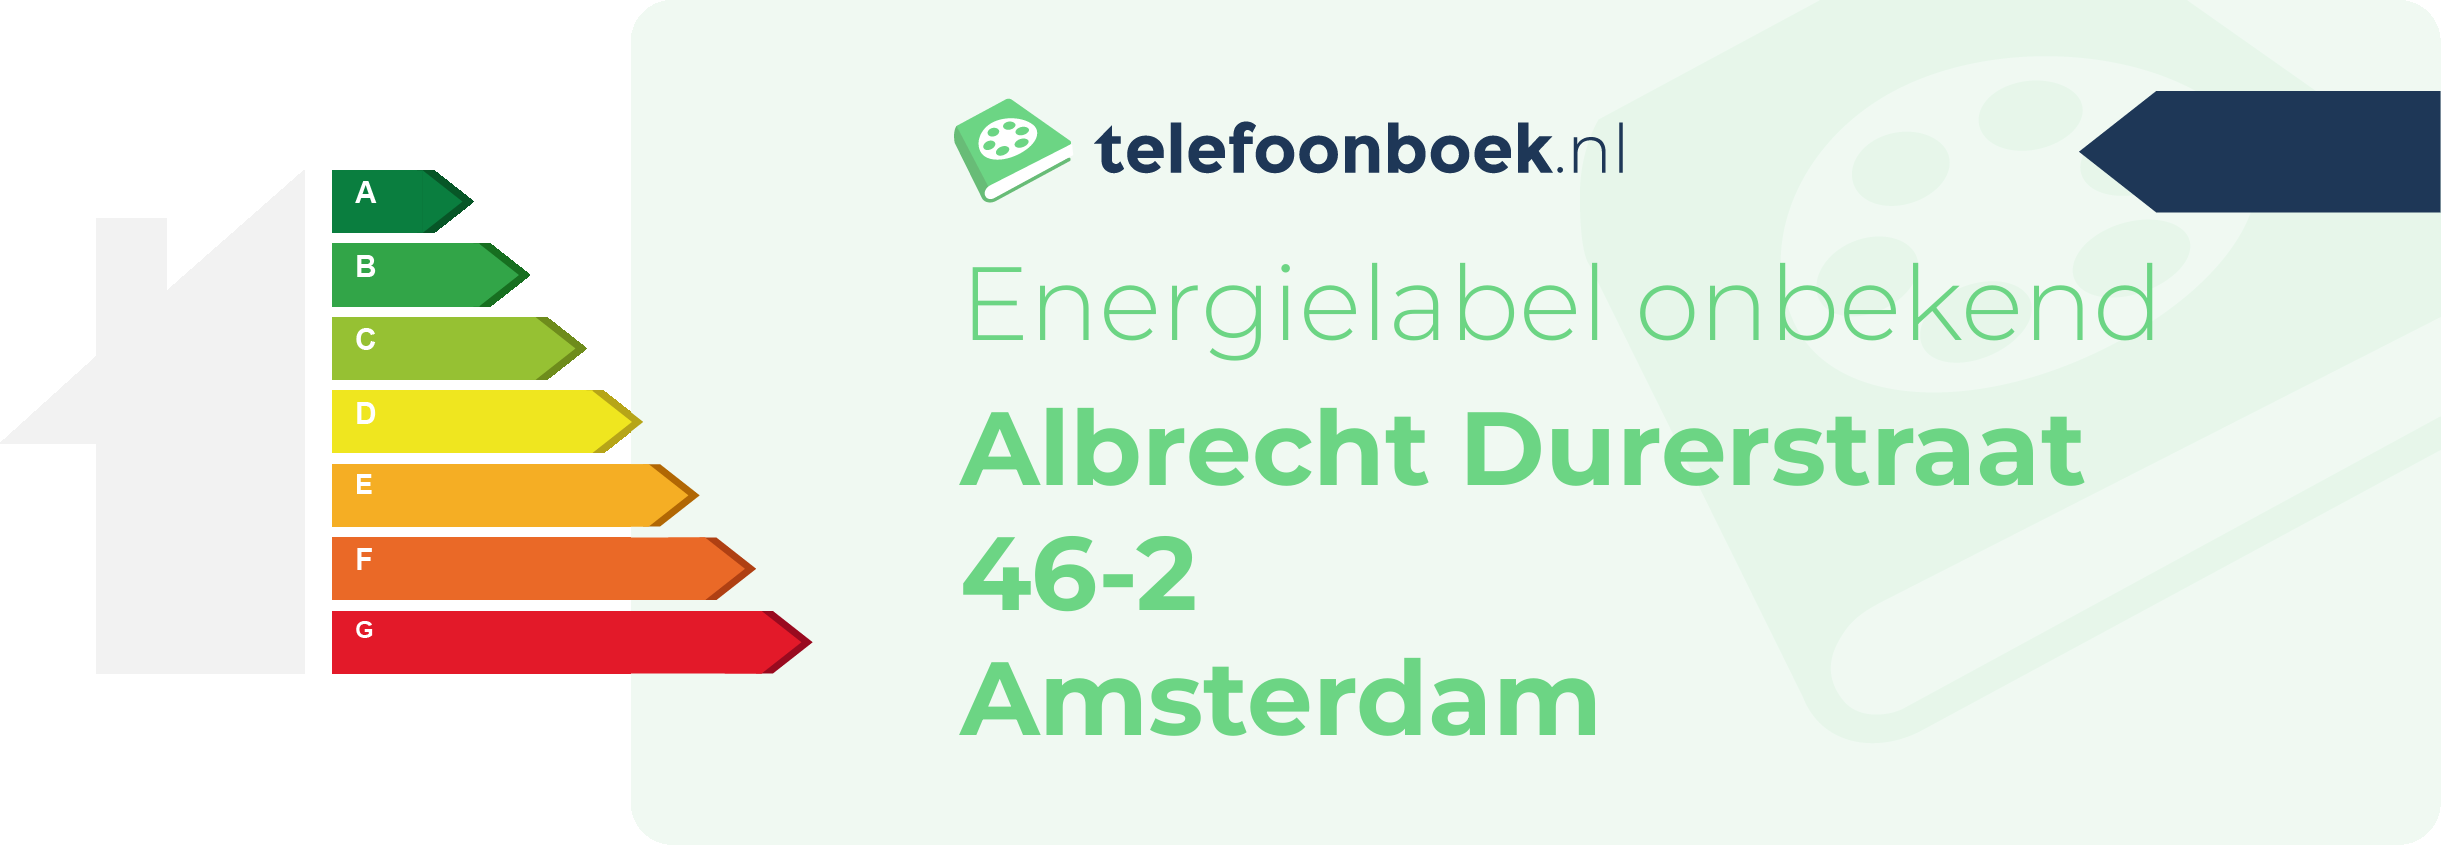 Energielabel Albrecht Durerstraat 46-2 Amsterdam